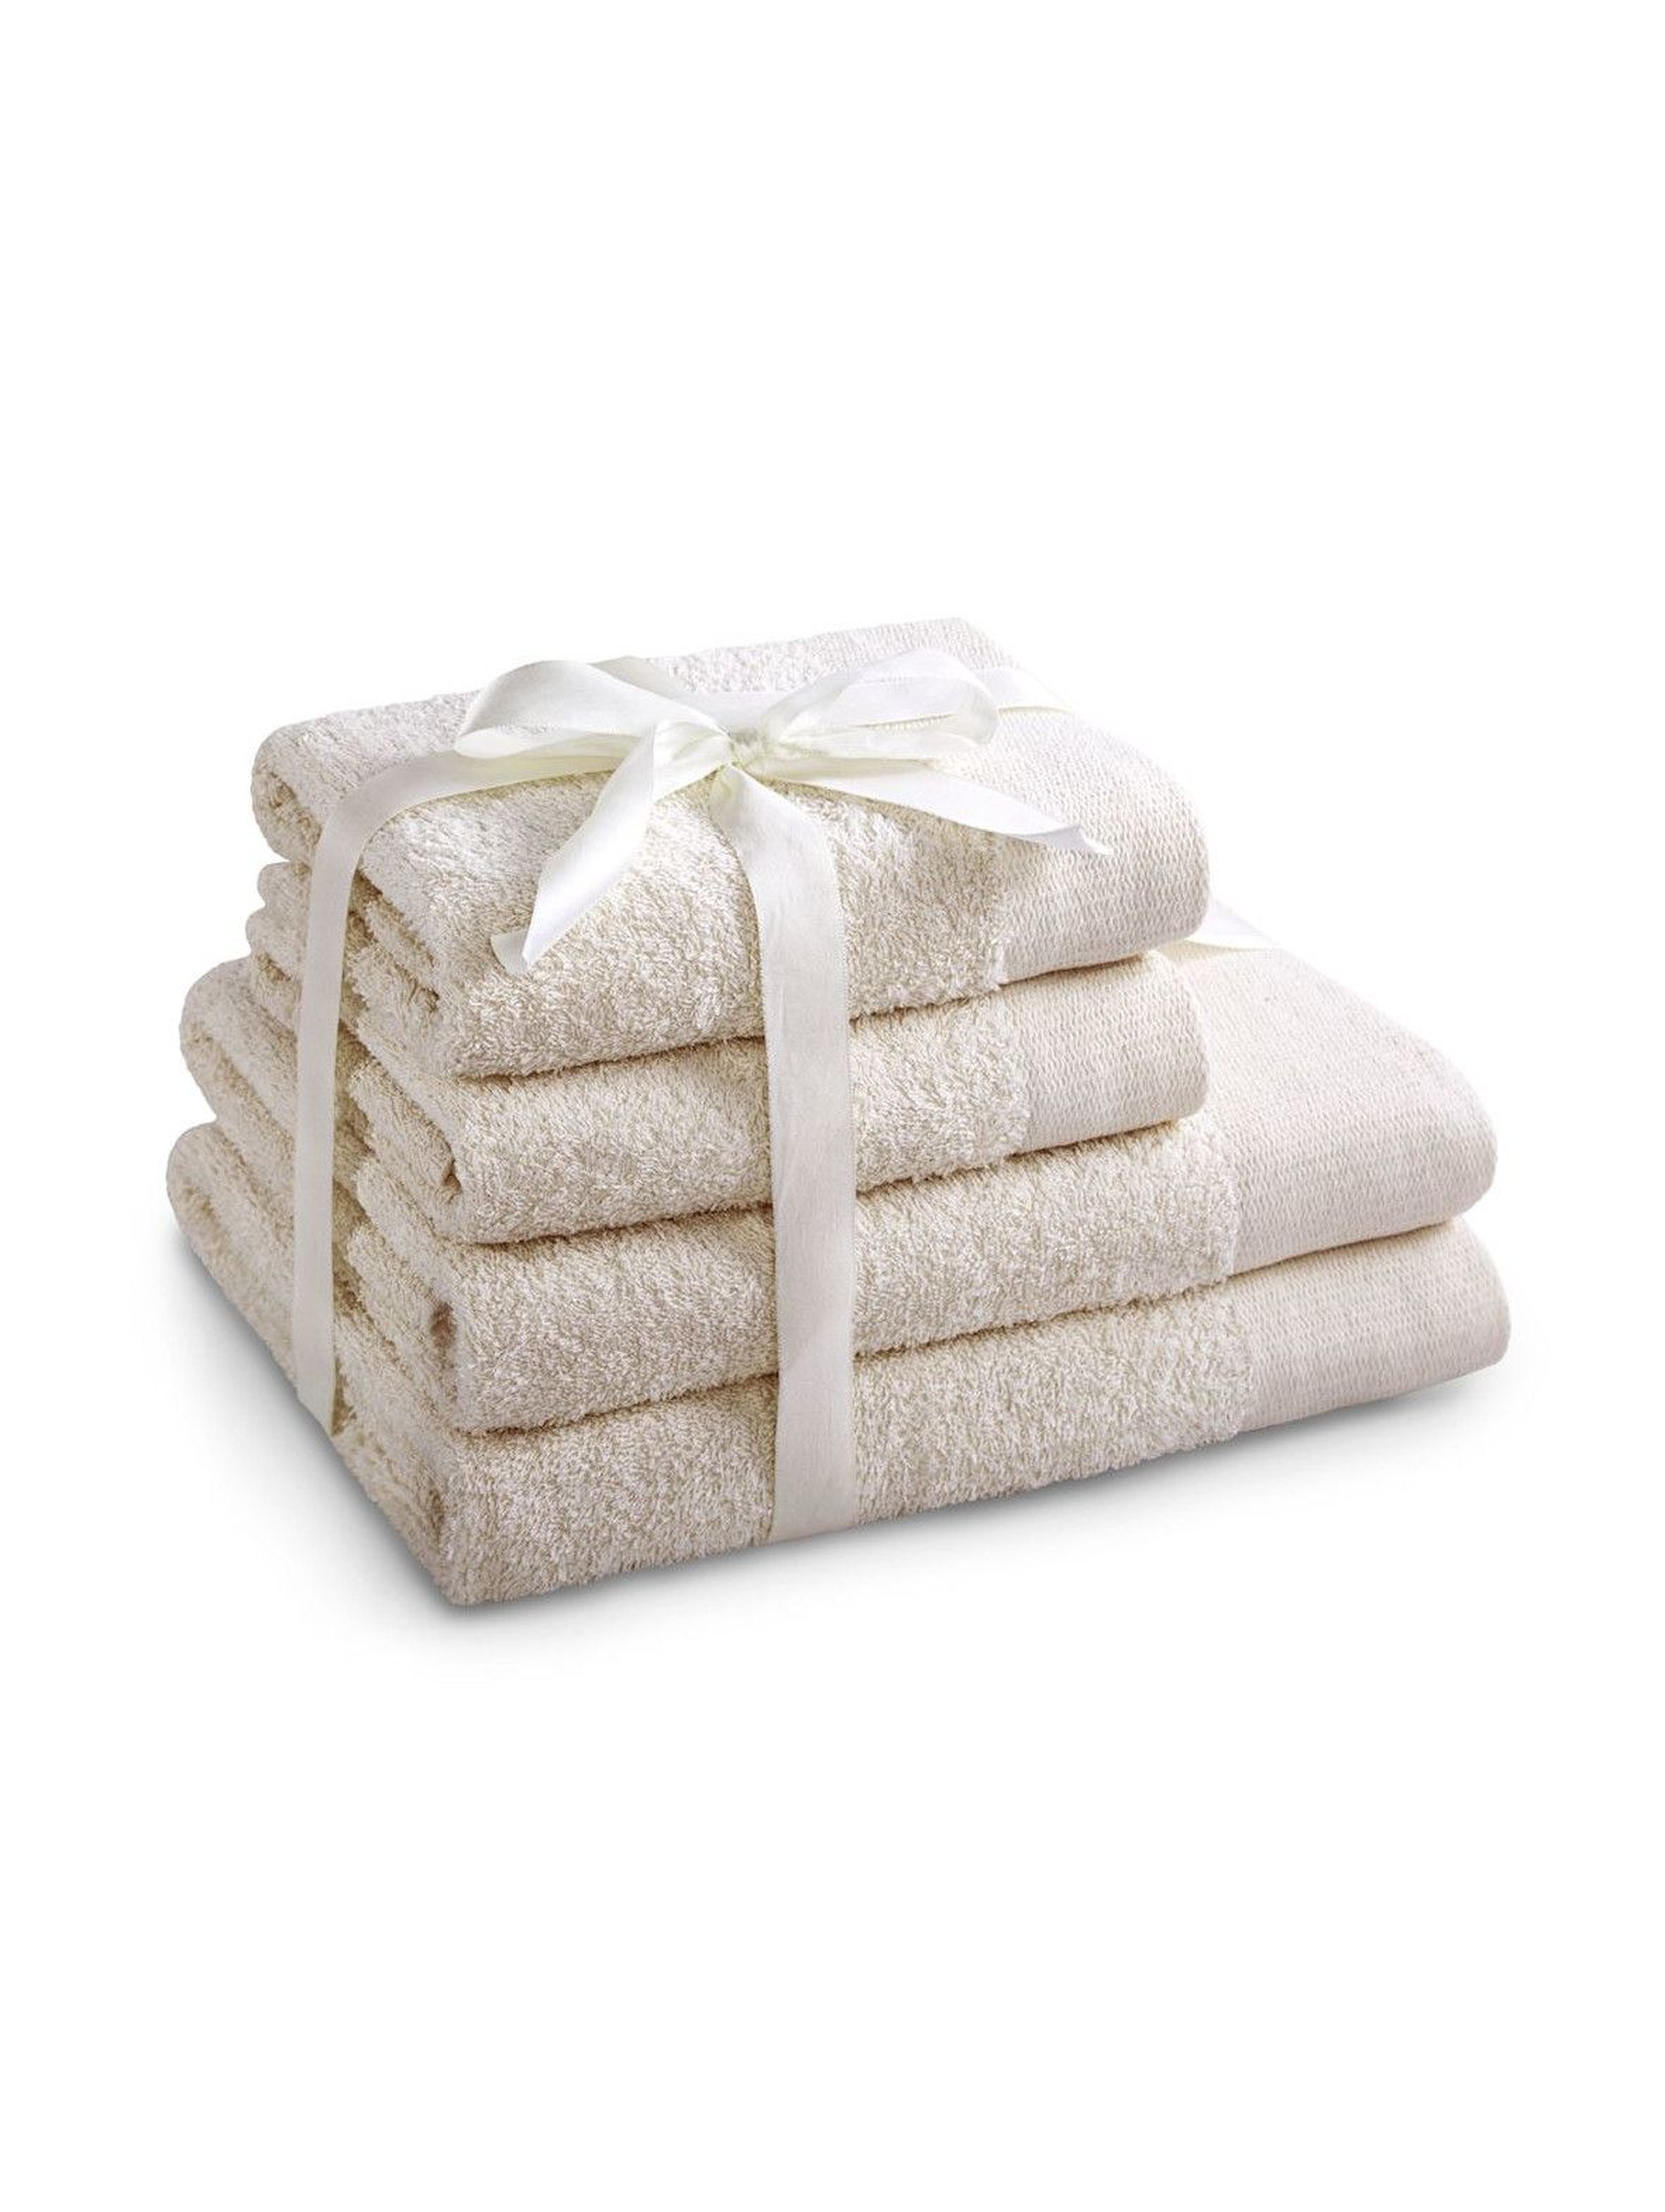 Zestaw ręczników bawłenianych AMARI ecru 4 szt - 2 ręczniki 70x140 cm, 2 ręczniki 50x100 cm